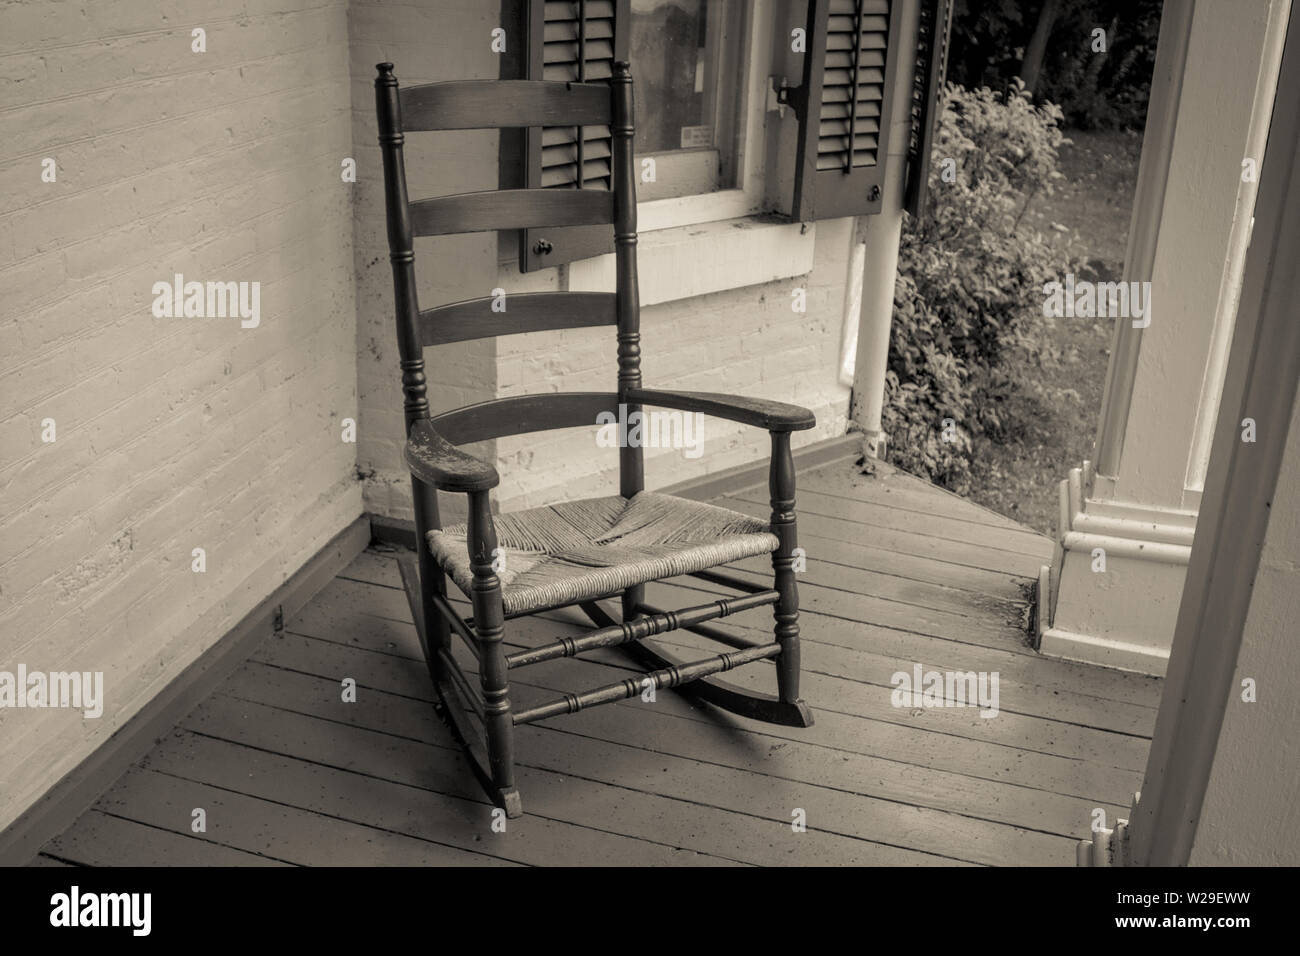 Rocking Chair vide. Rocking chair vide sous le porche d'une maison dans le style rétro Banque D'Images